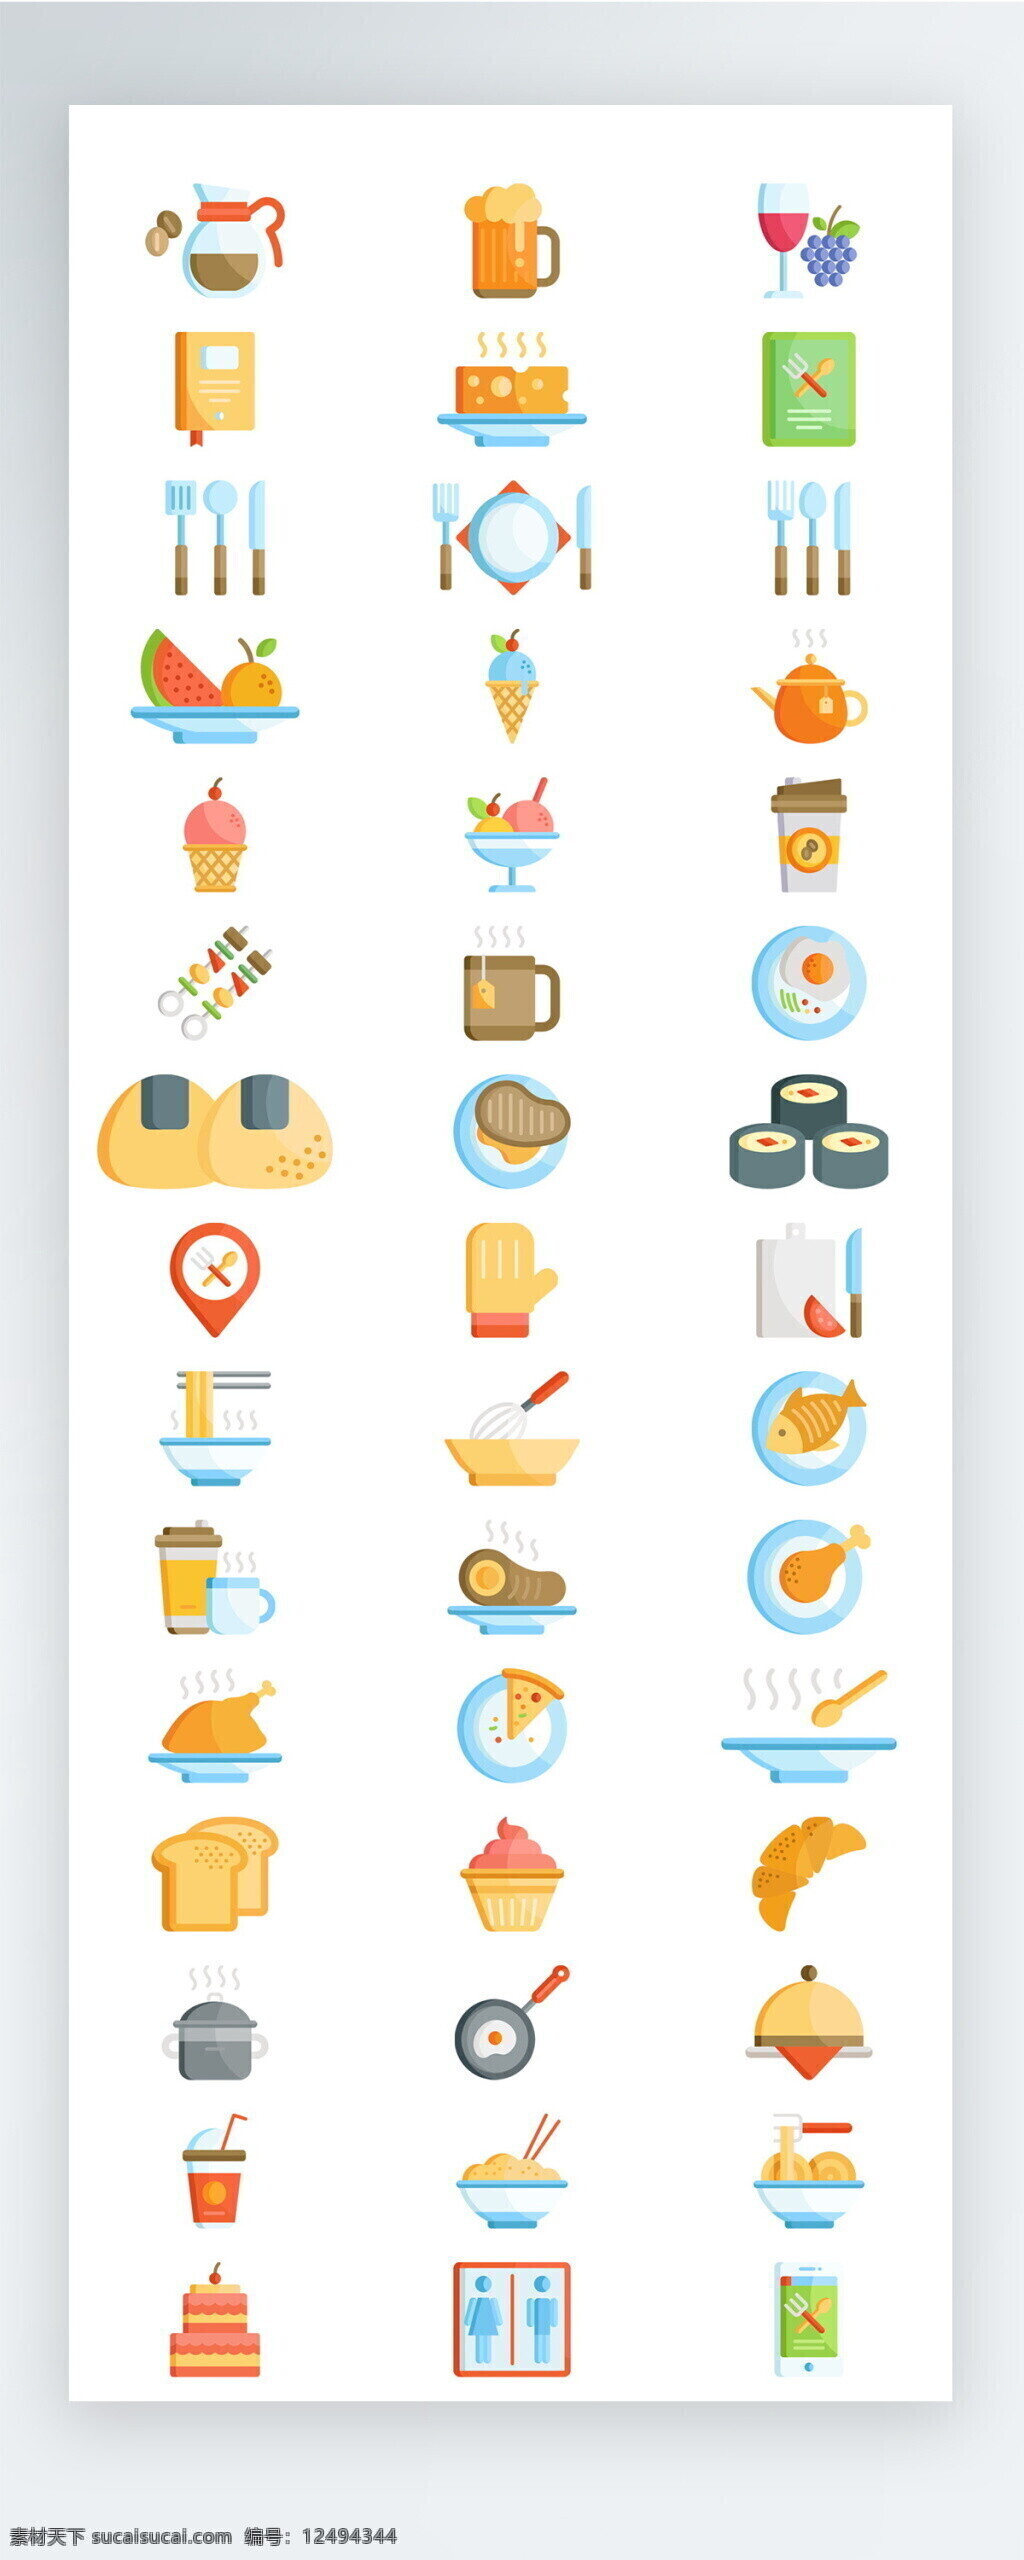 彩色 餐饮 食物 图标 矢量 icon icon图标 ui 手机 拟物 社交 水果 糕点 酒 购物 娱乐 饮料 生活 休闲 家具 厨具 餐具